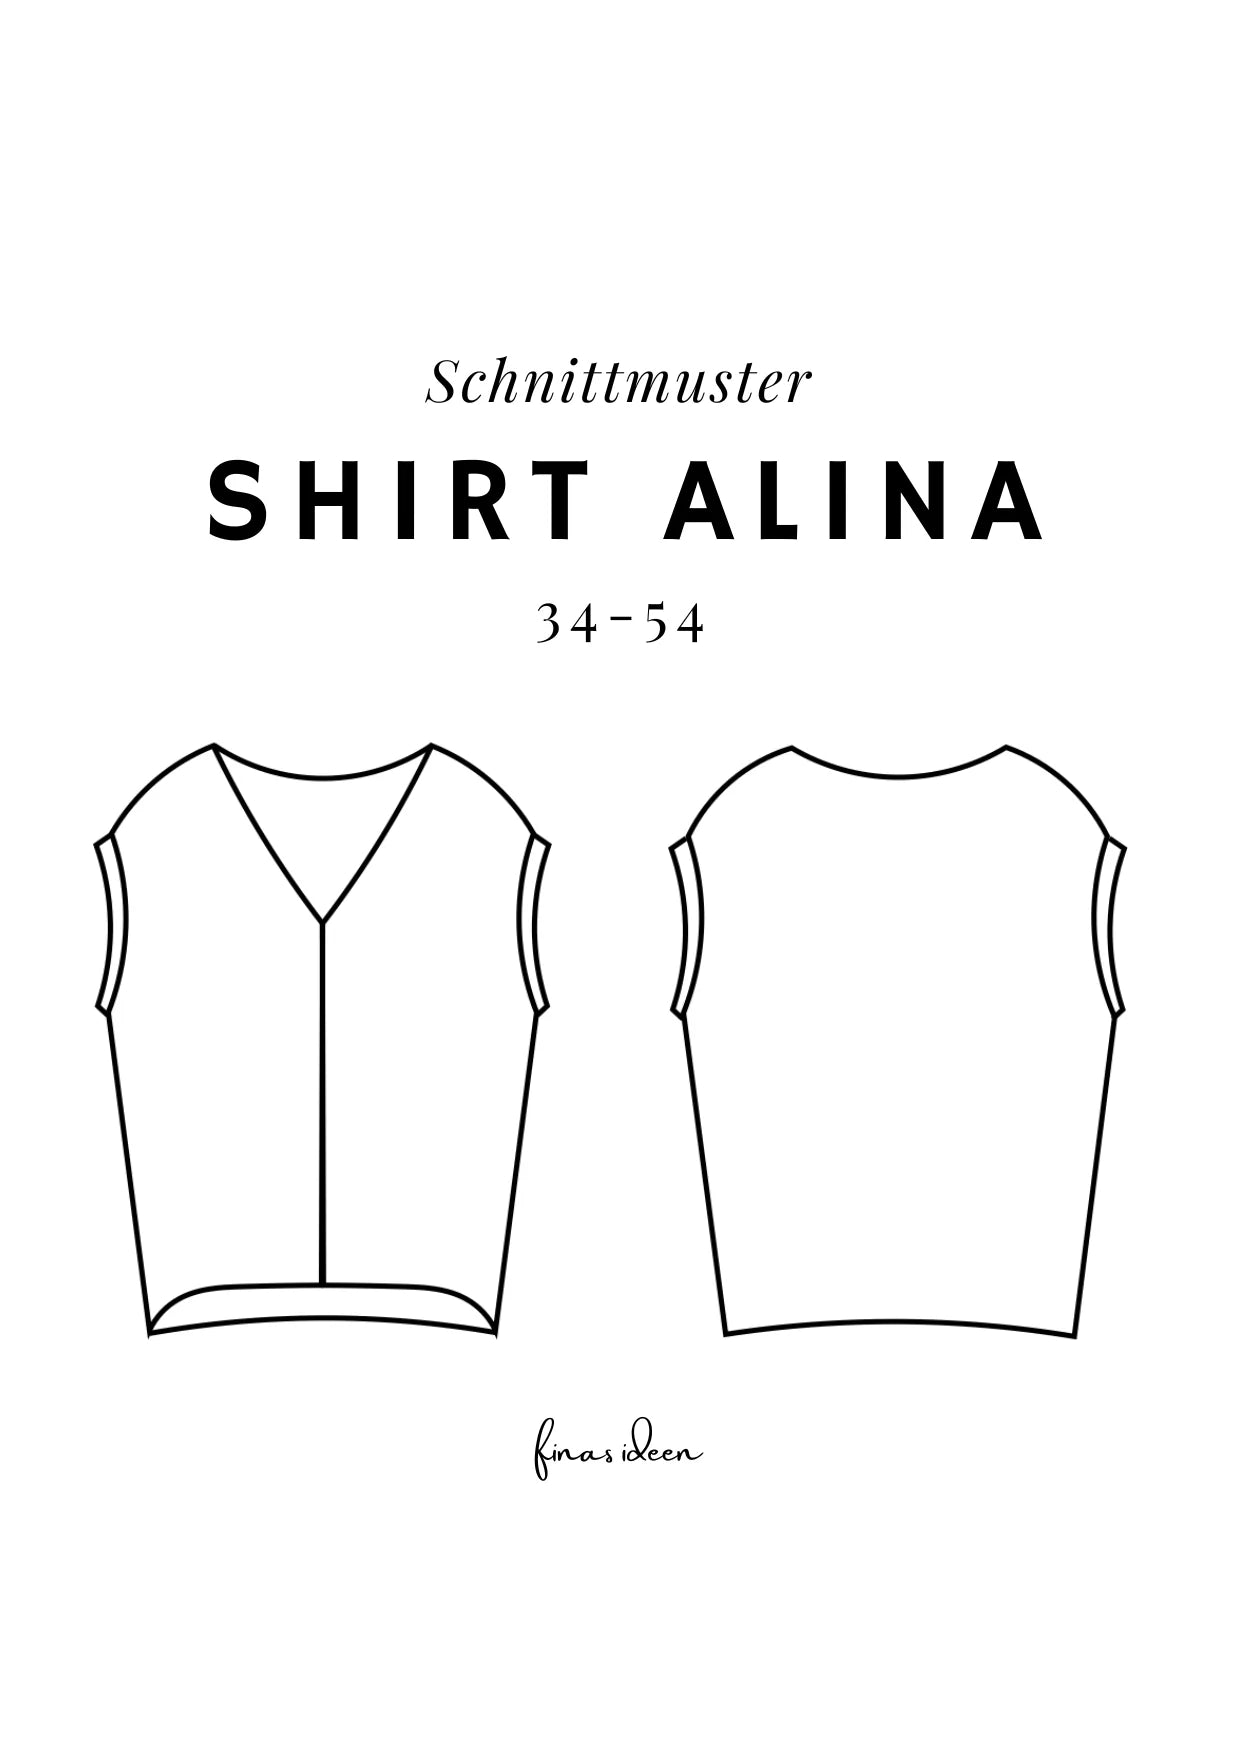 Alina - Blusenshirt (Papierschnittmuster) - FinasIdeen